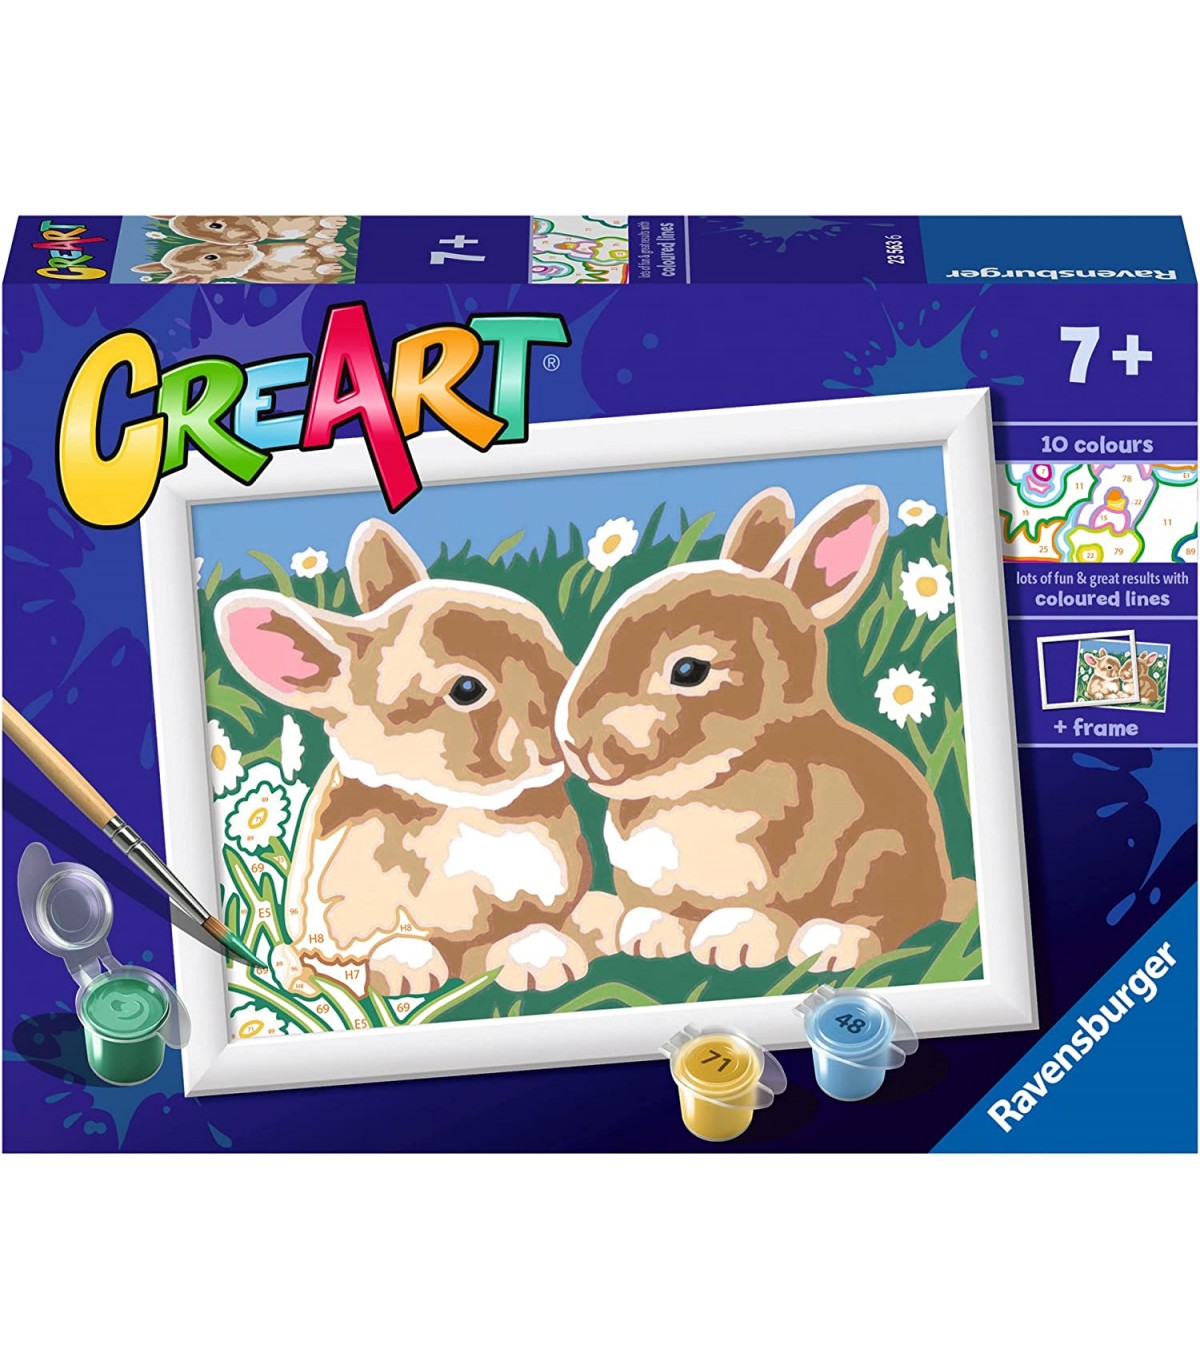 CreArt Serie E Classic Teneri Coniglietti, Giochi artistici e creativi, Ravensburger